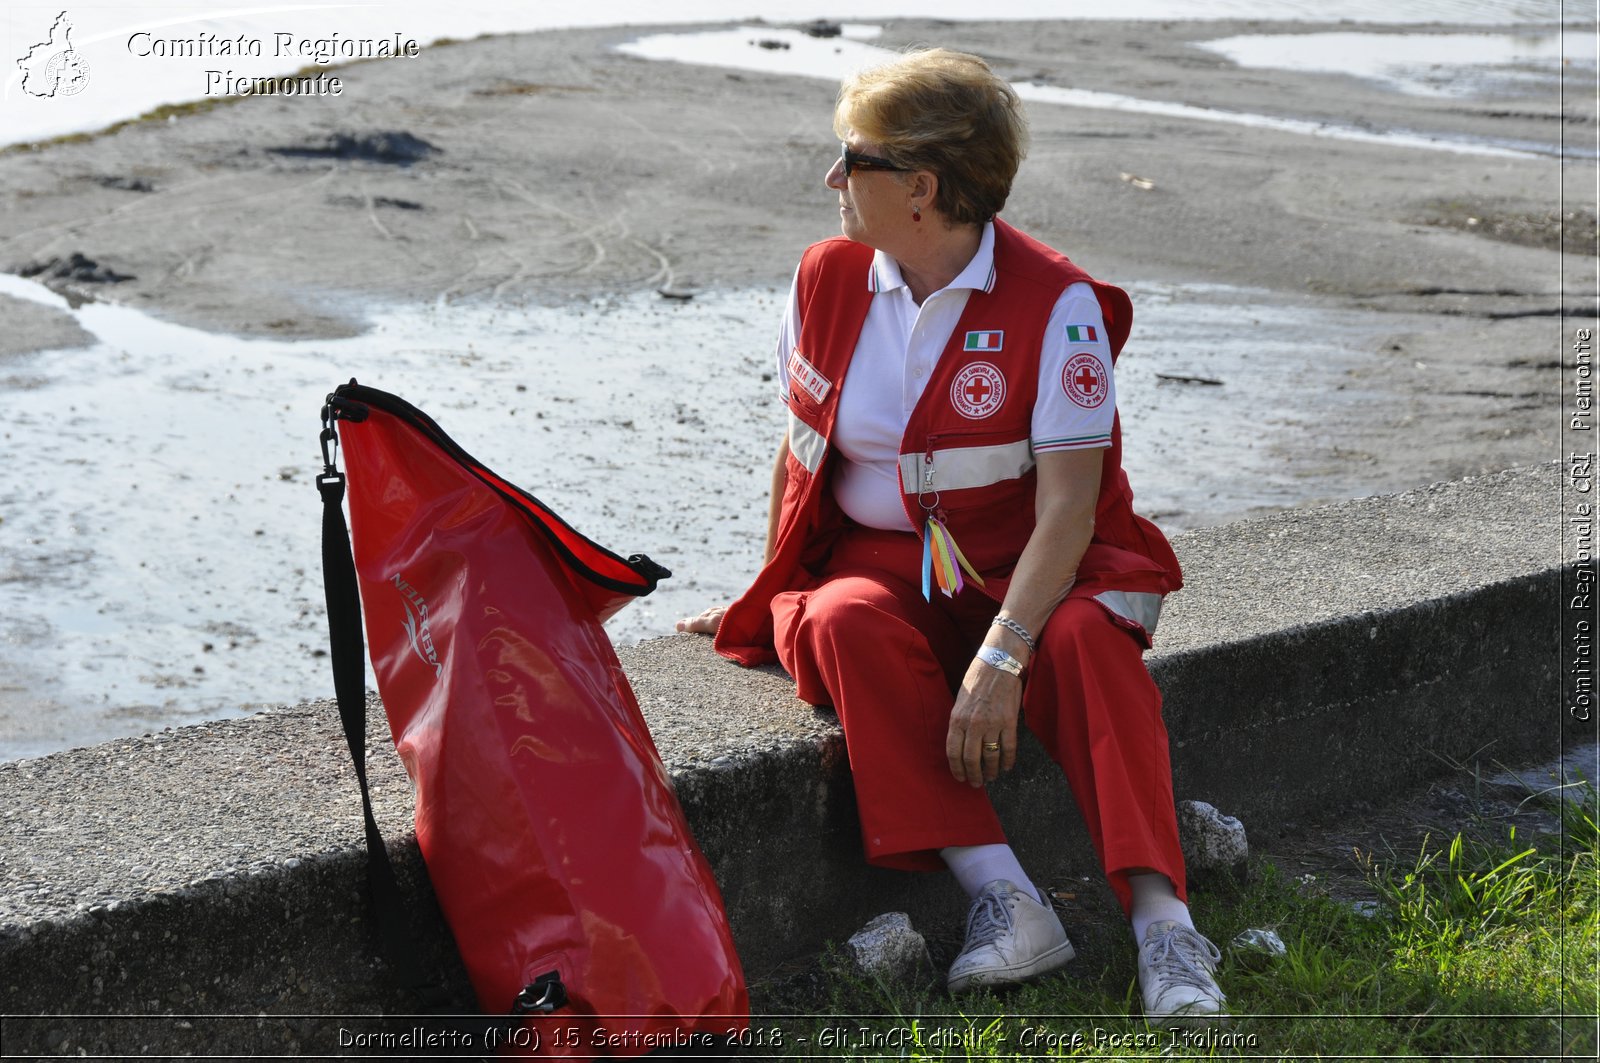 Dormelletto (NO) 15 Settembre 2018 - Gli InCRIdibili - Croce Rossa Italiana- Comitato Regionale del Piemonte